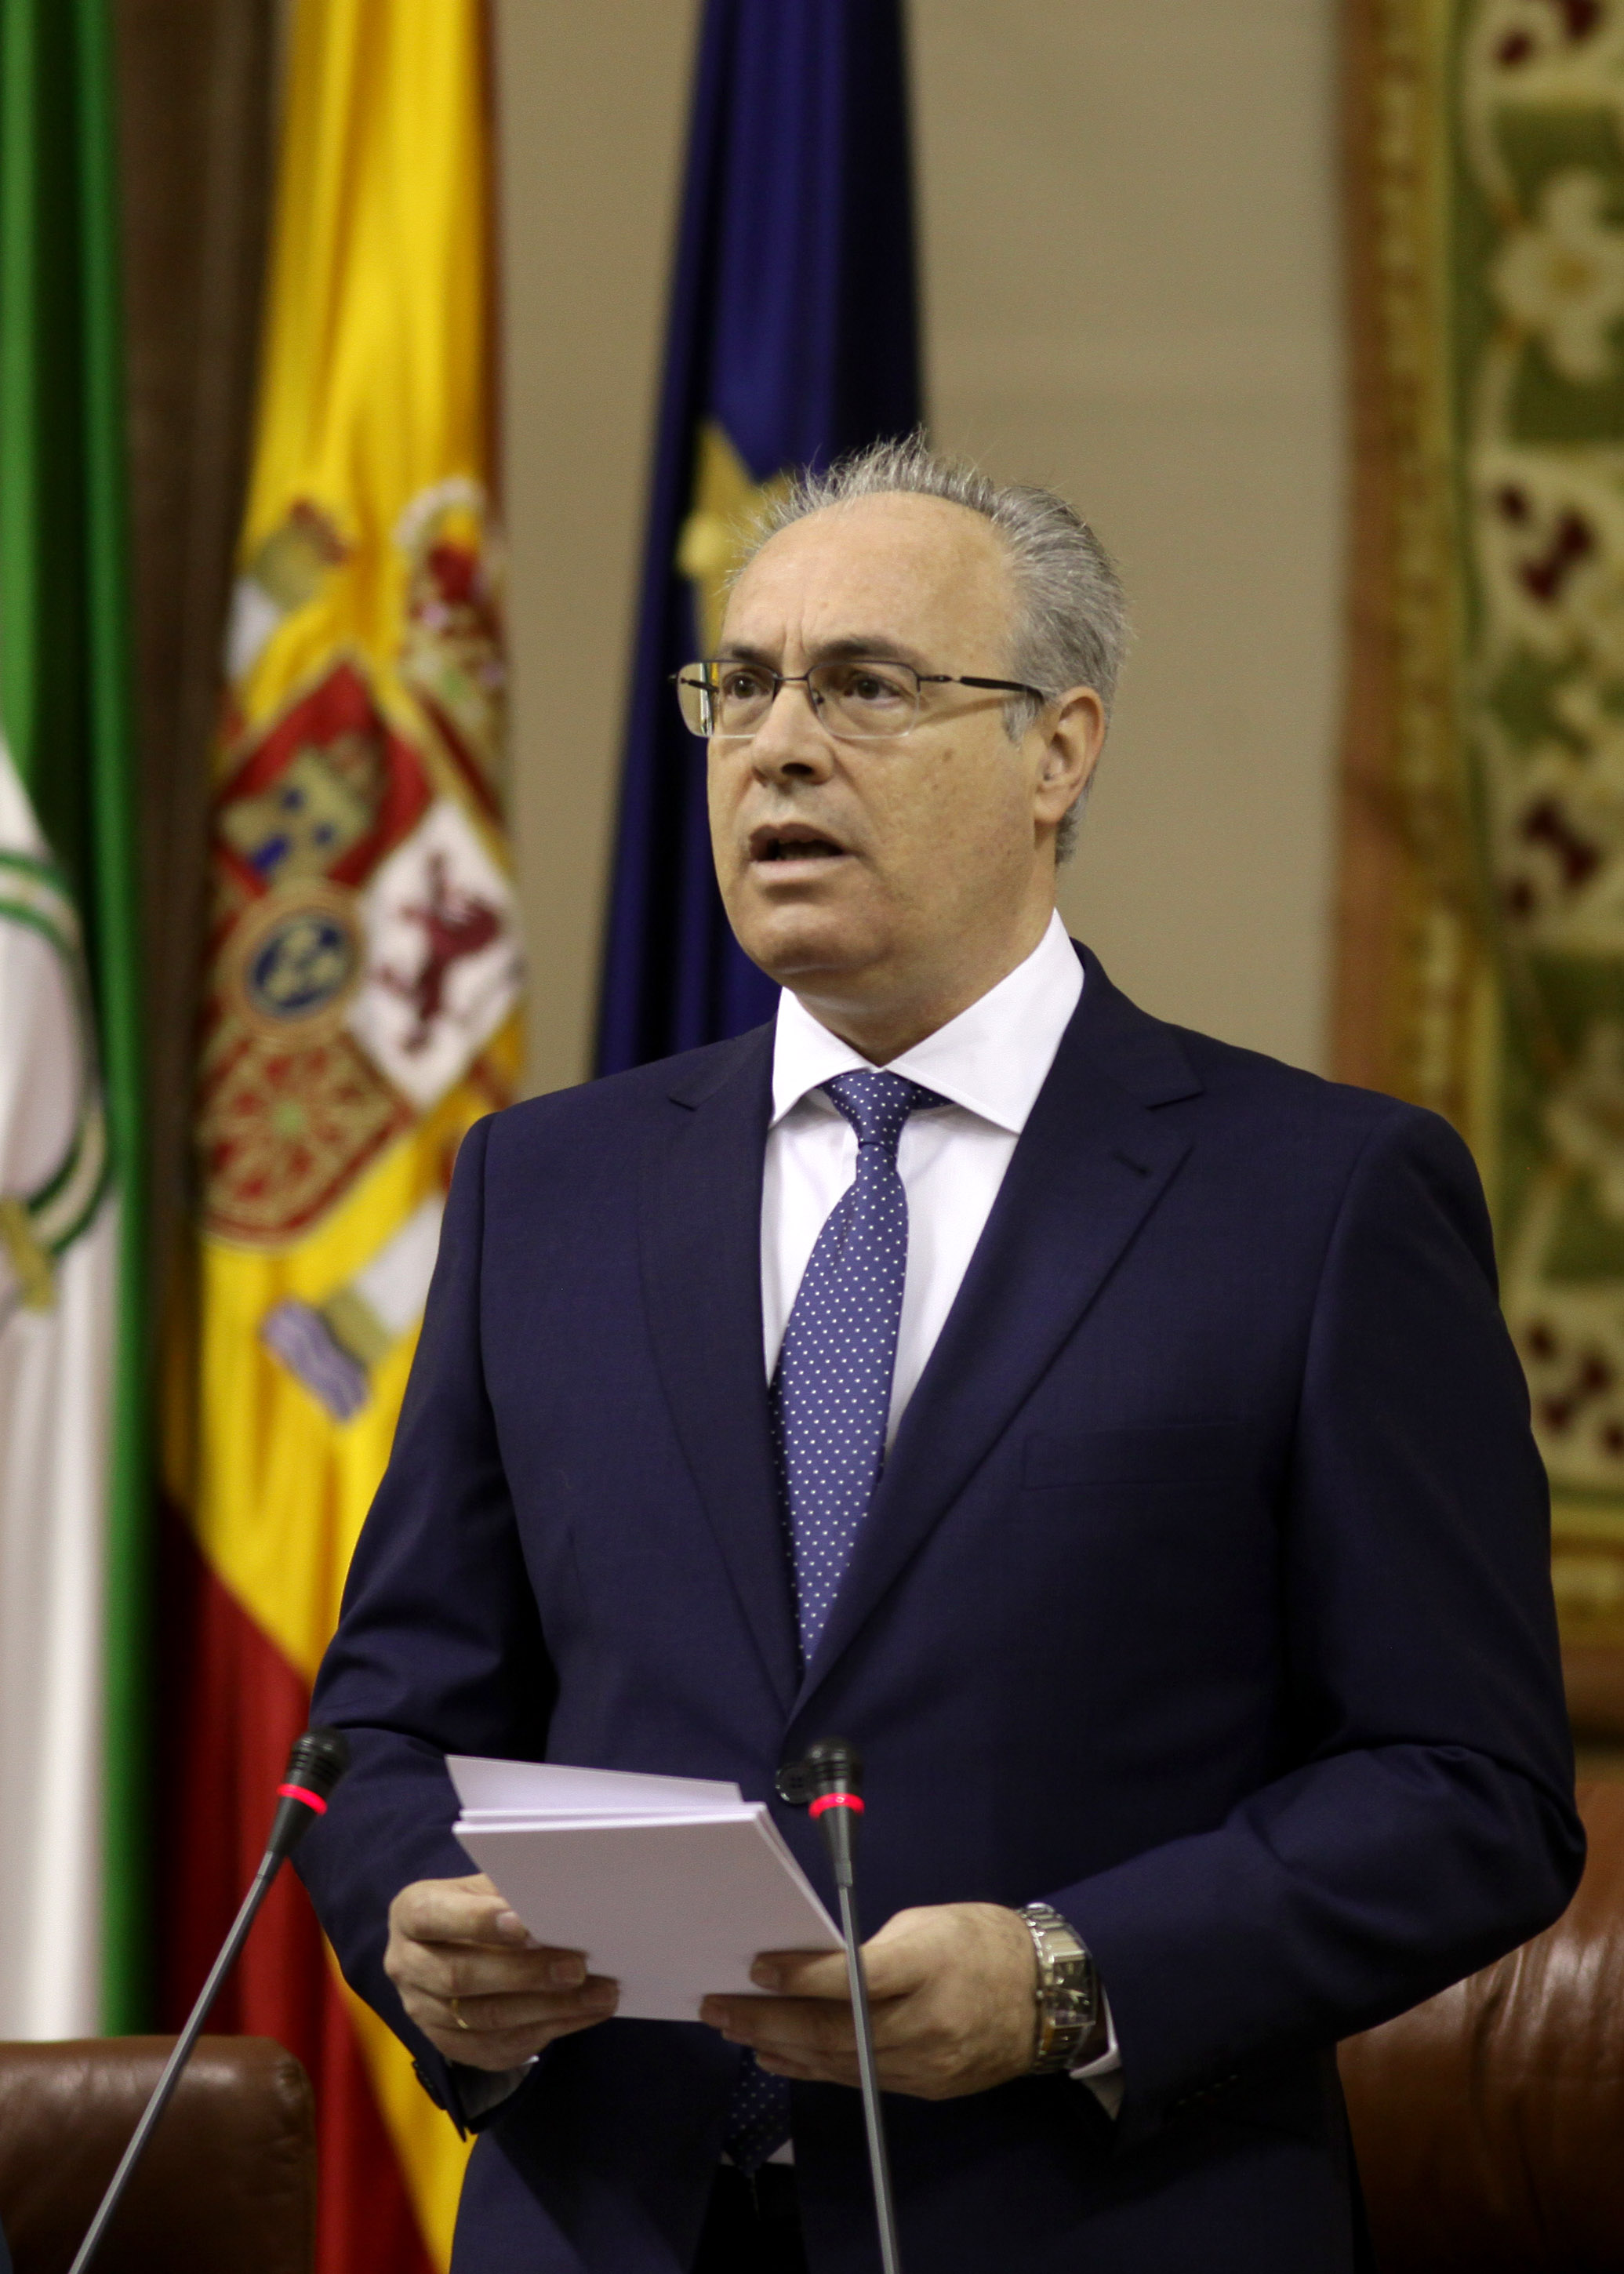 El presidente del Parlamento de Andaluca, Juan Pablo Durn, pronuncia su discurso institucional en el Pleno del 28 de Febrero